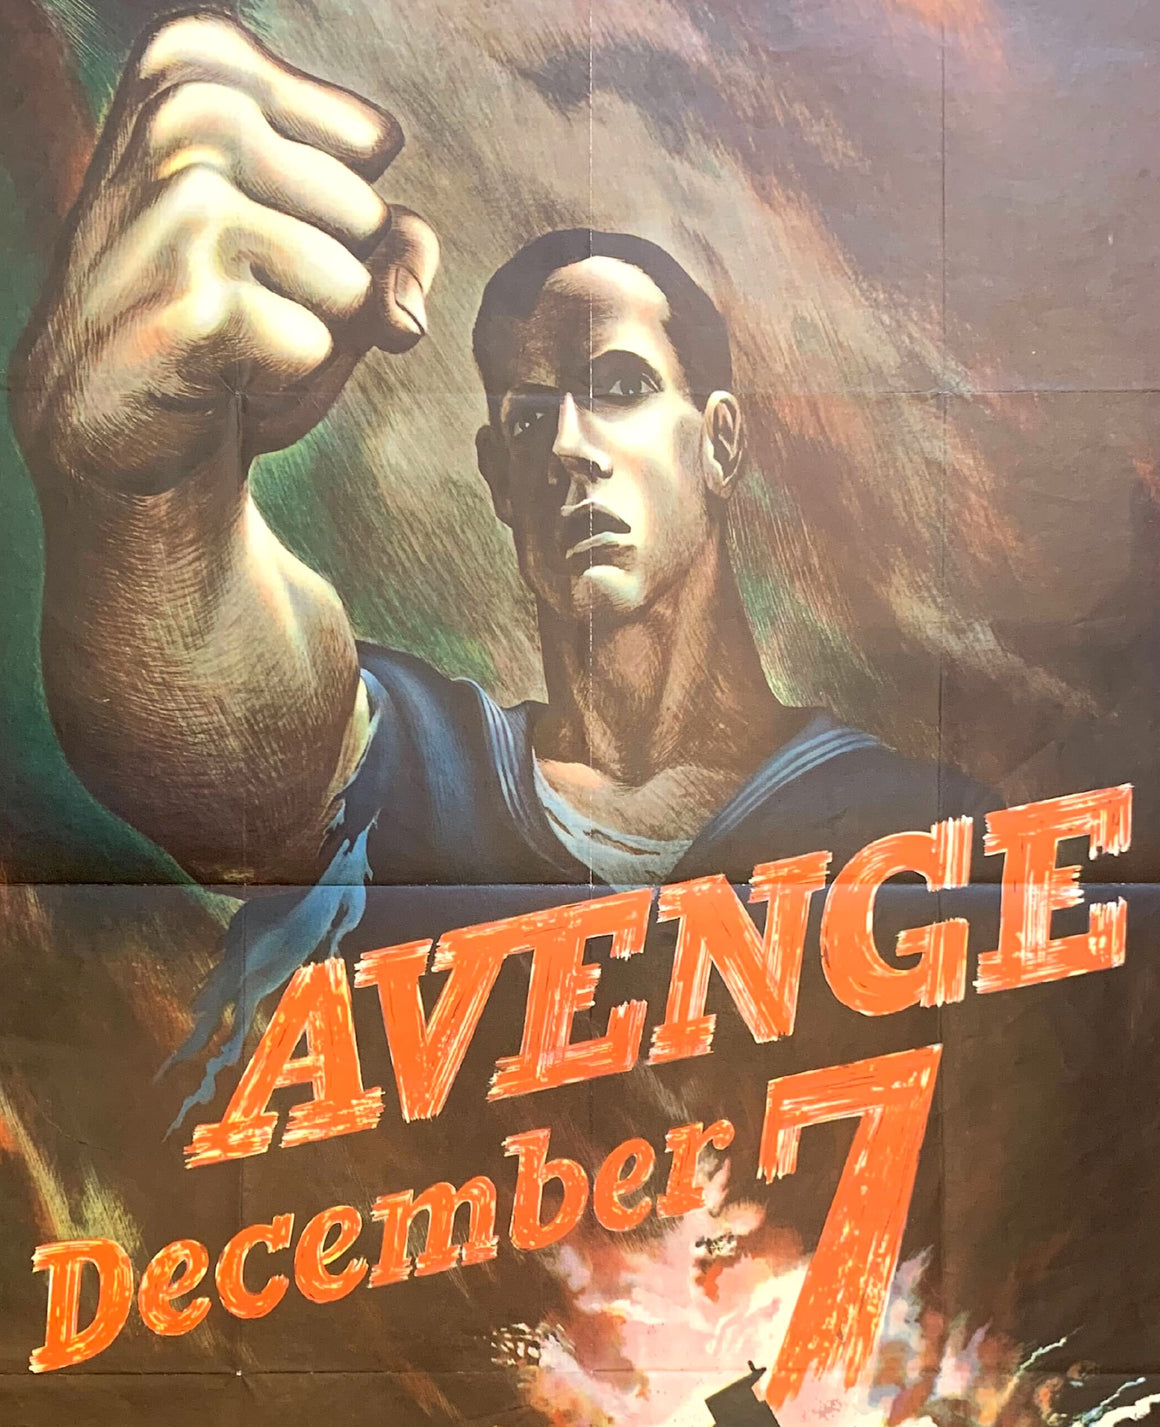 "Avenge December 7" Vintage WWII Poster, 1942